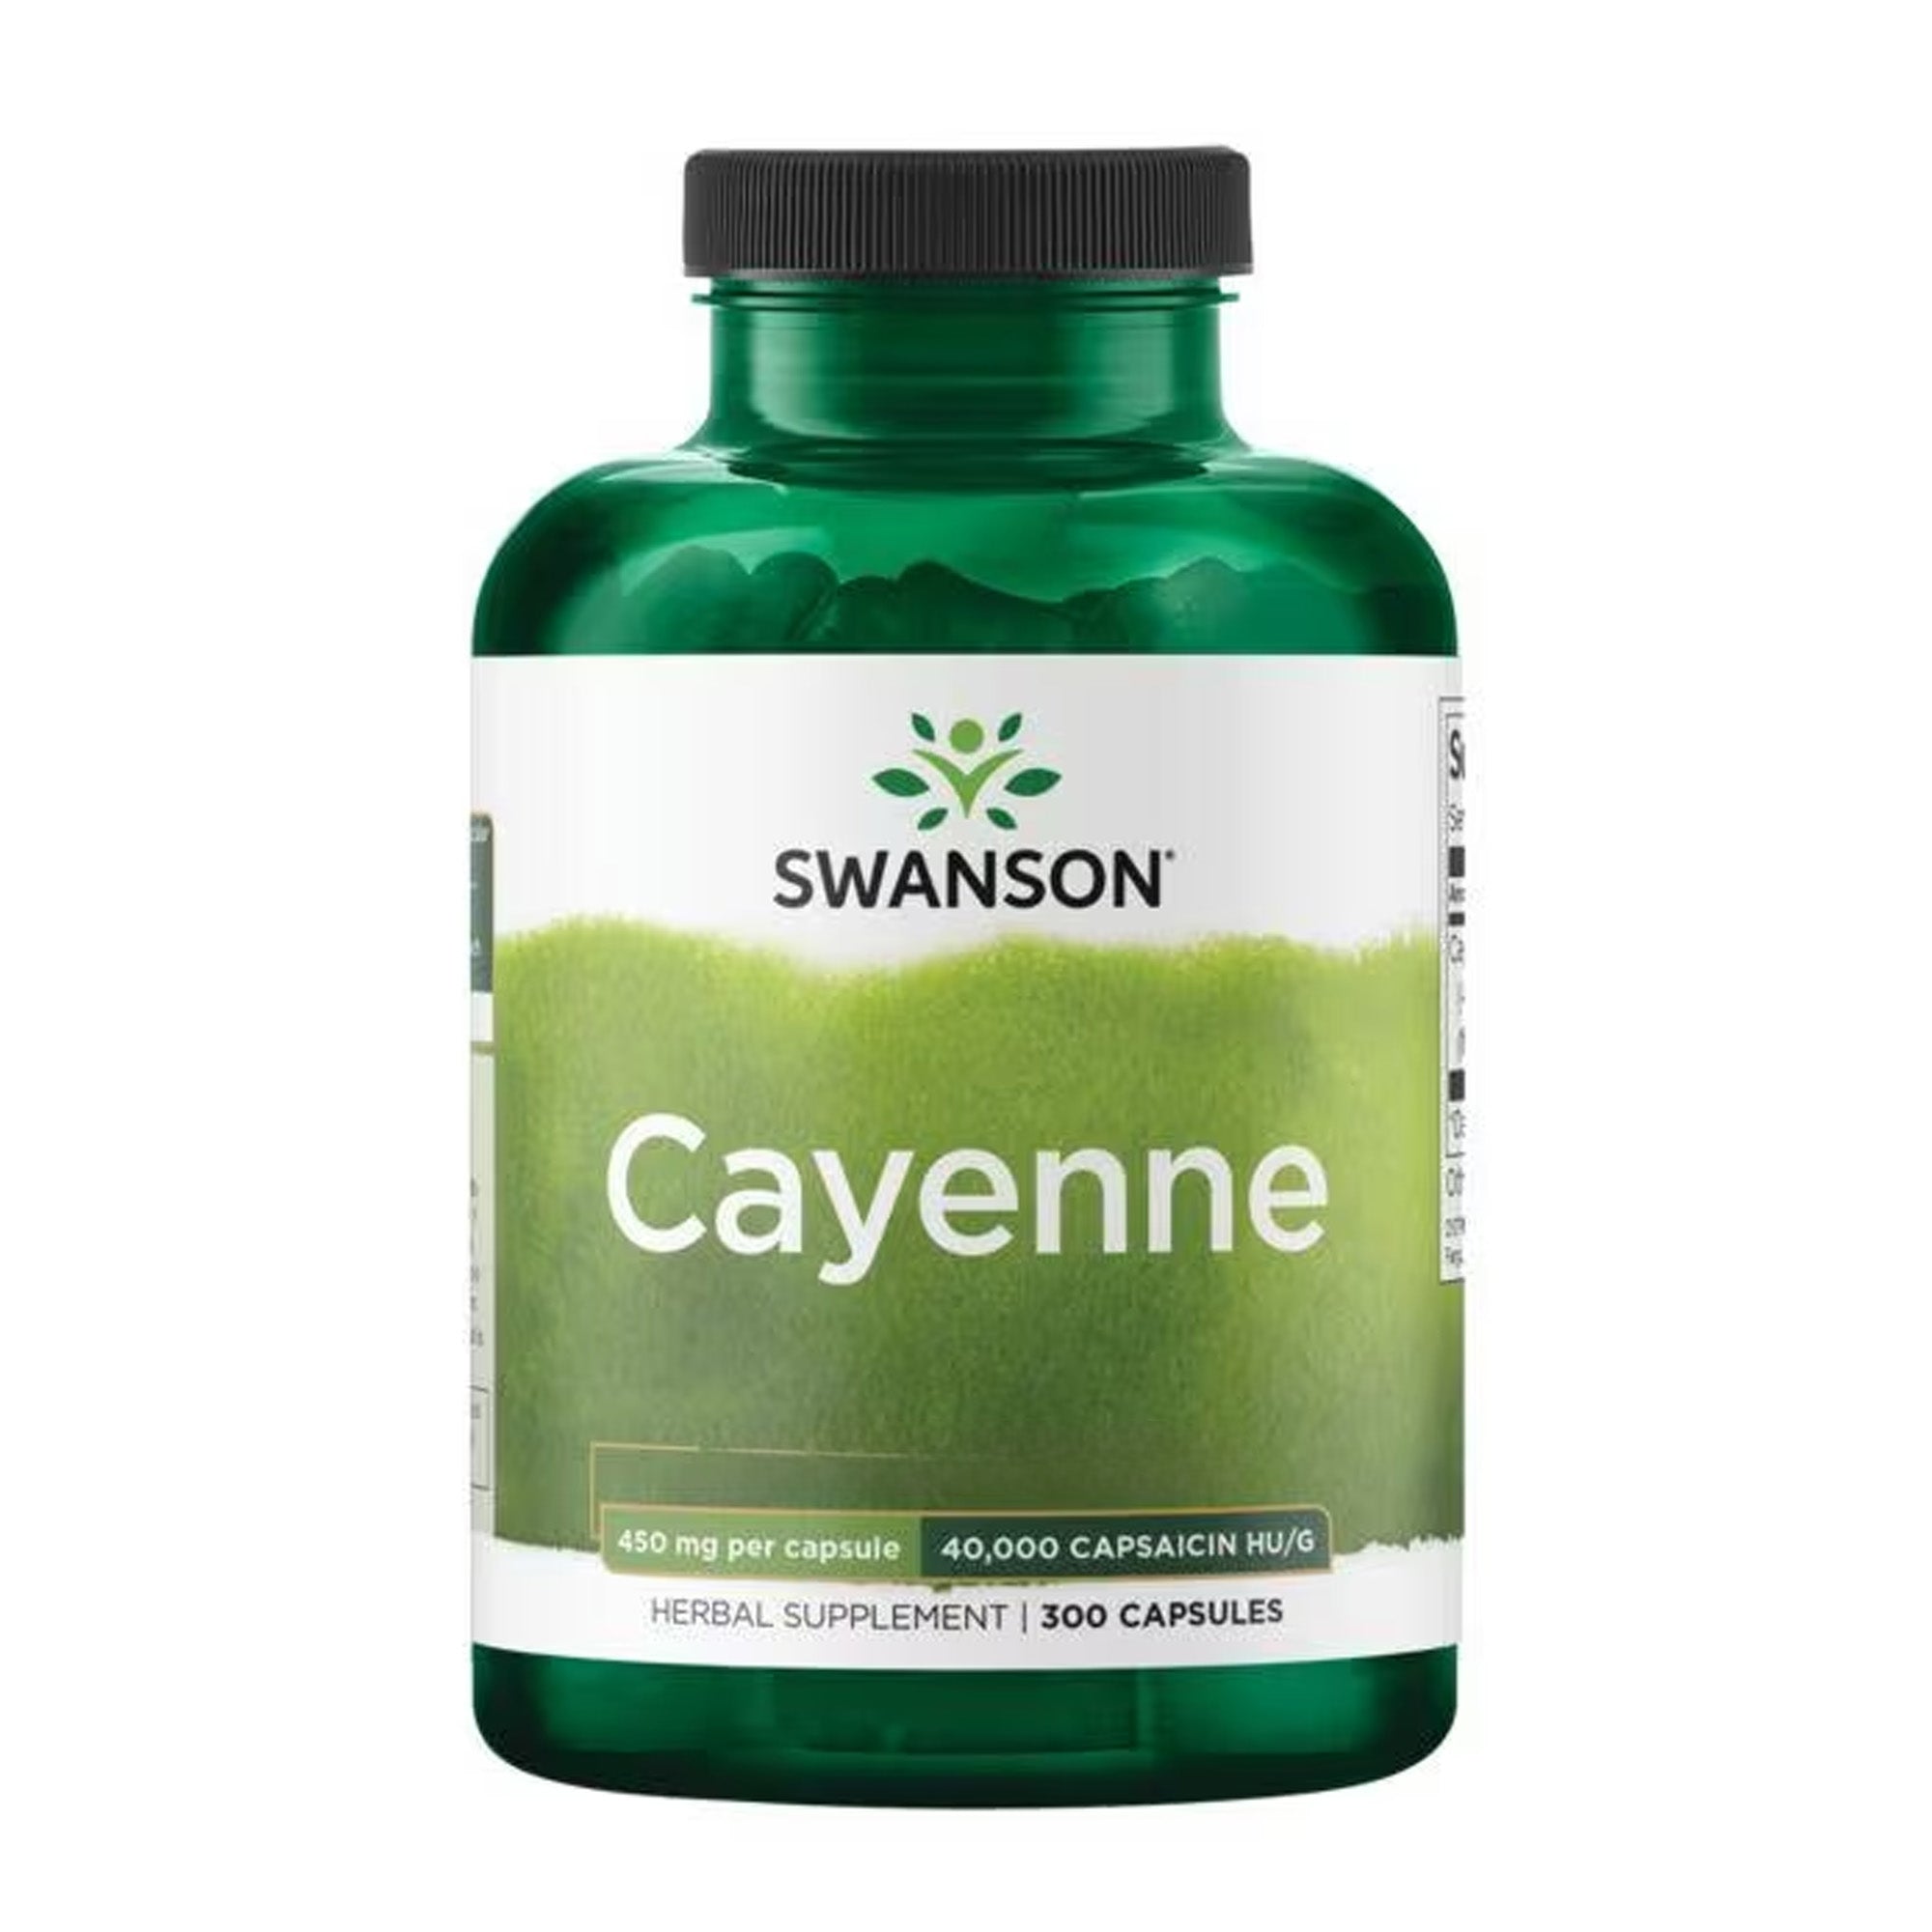 Swanson Cayenne supplement